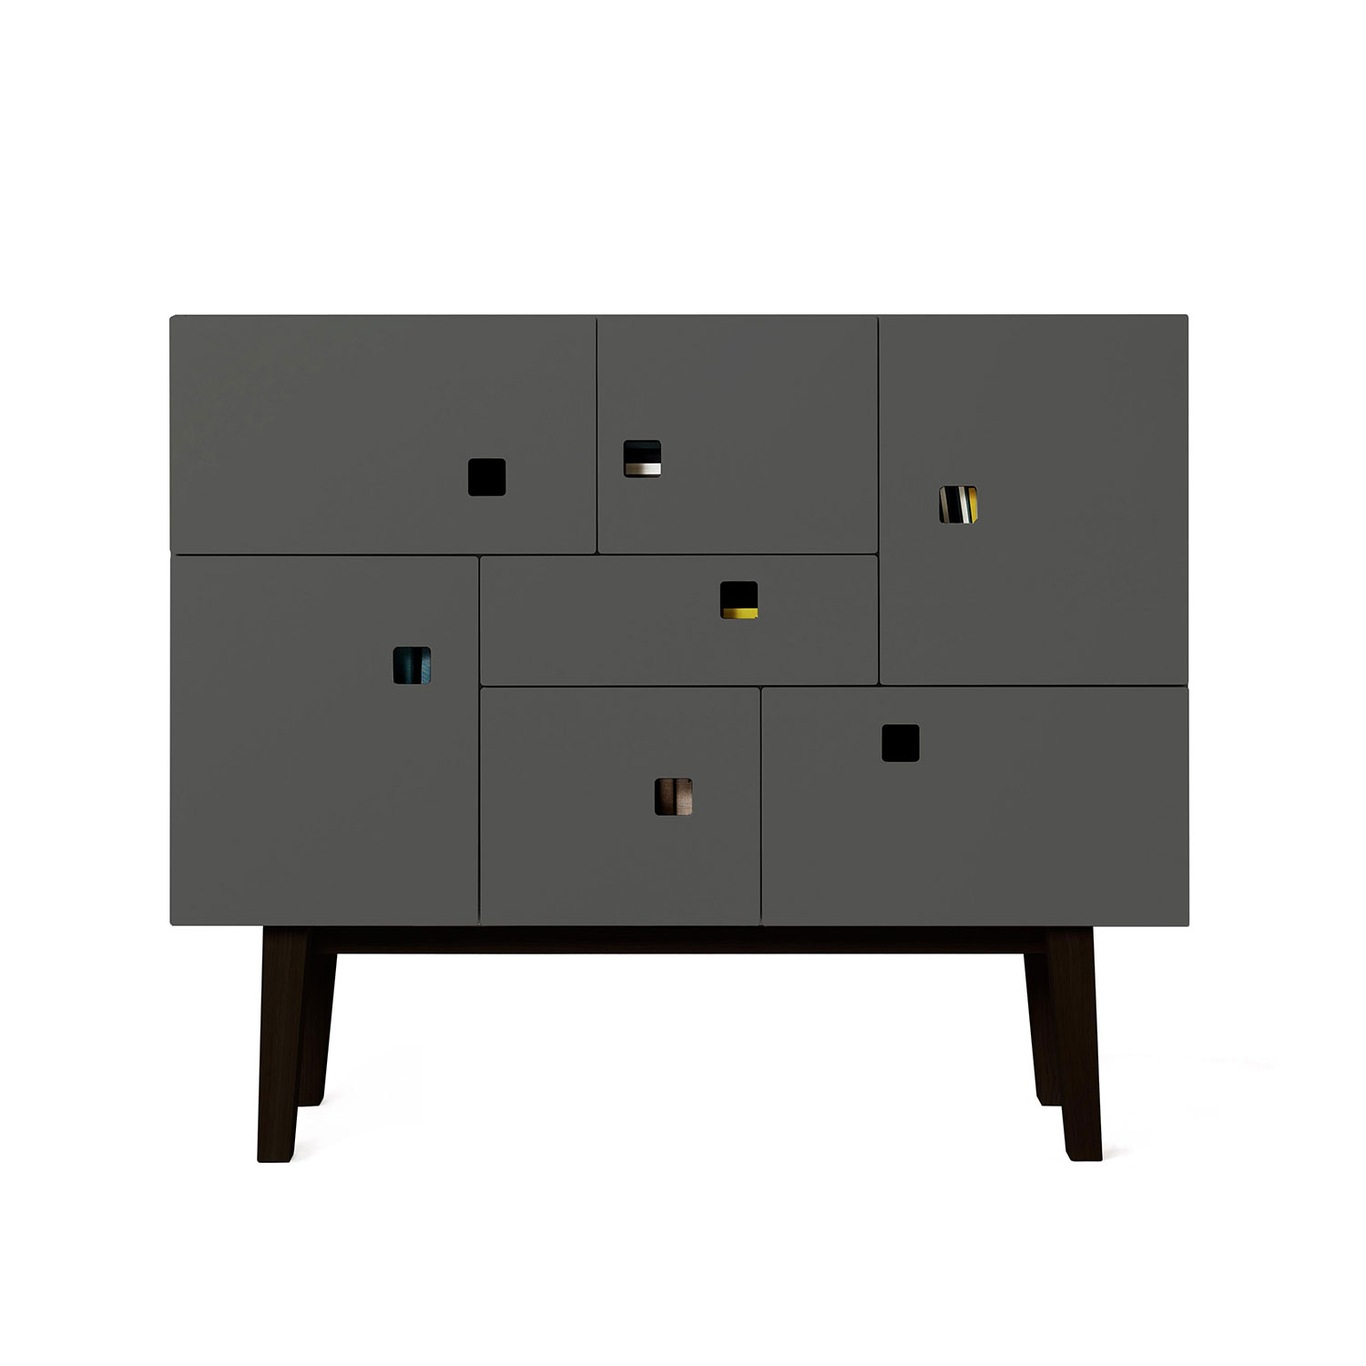 Peep C1 Multi-Purpose Cabinet, Slate Grey/Black